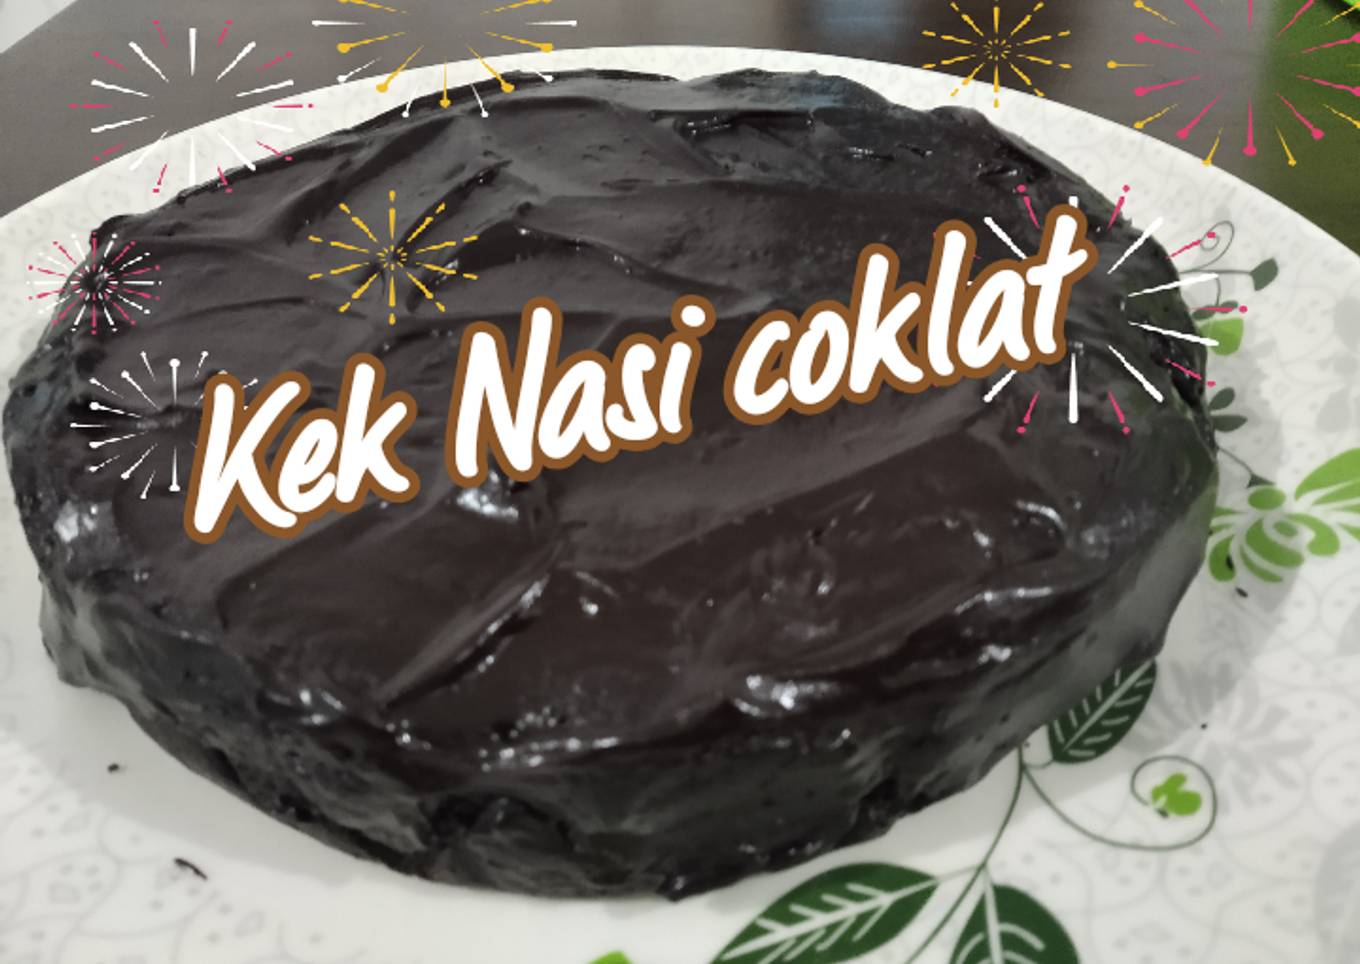 Kek Nasi coklat